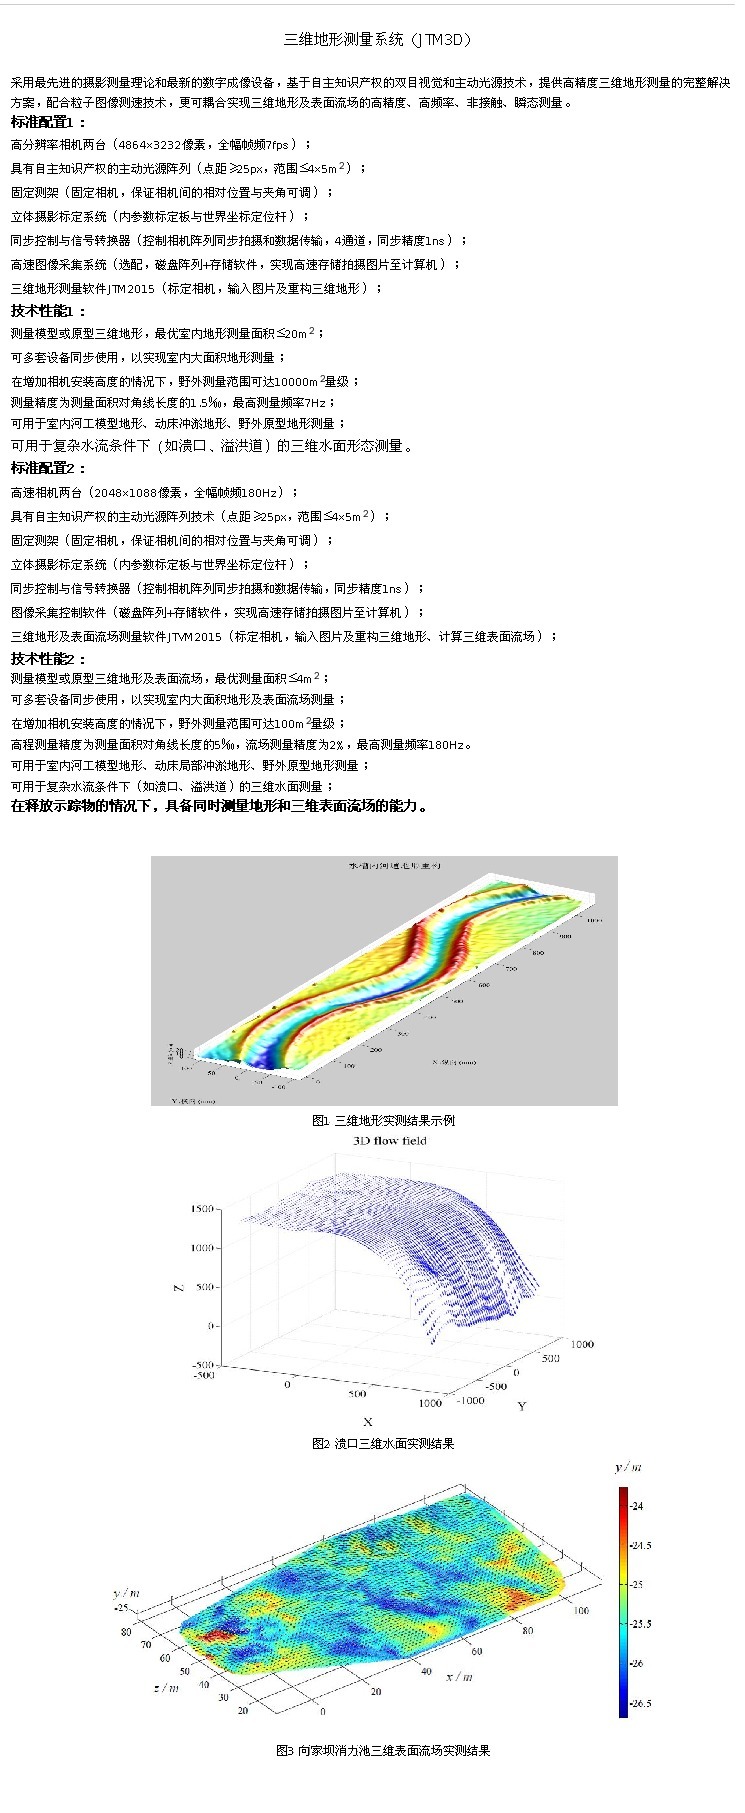 企服商城, 三维地形测量系统（JTM3D）,江宜科技